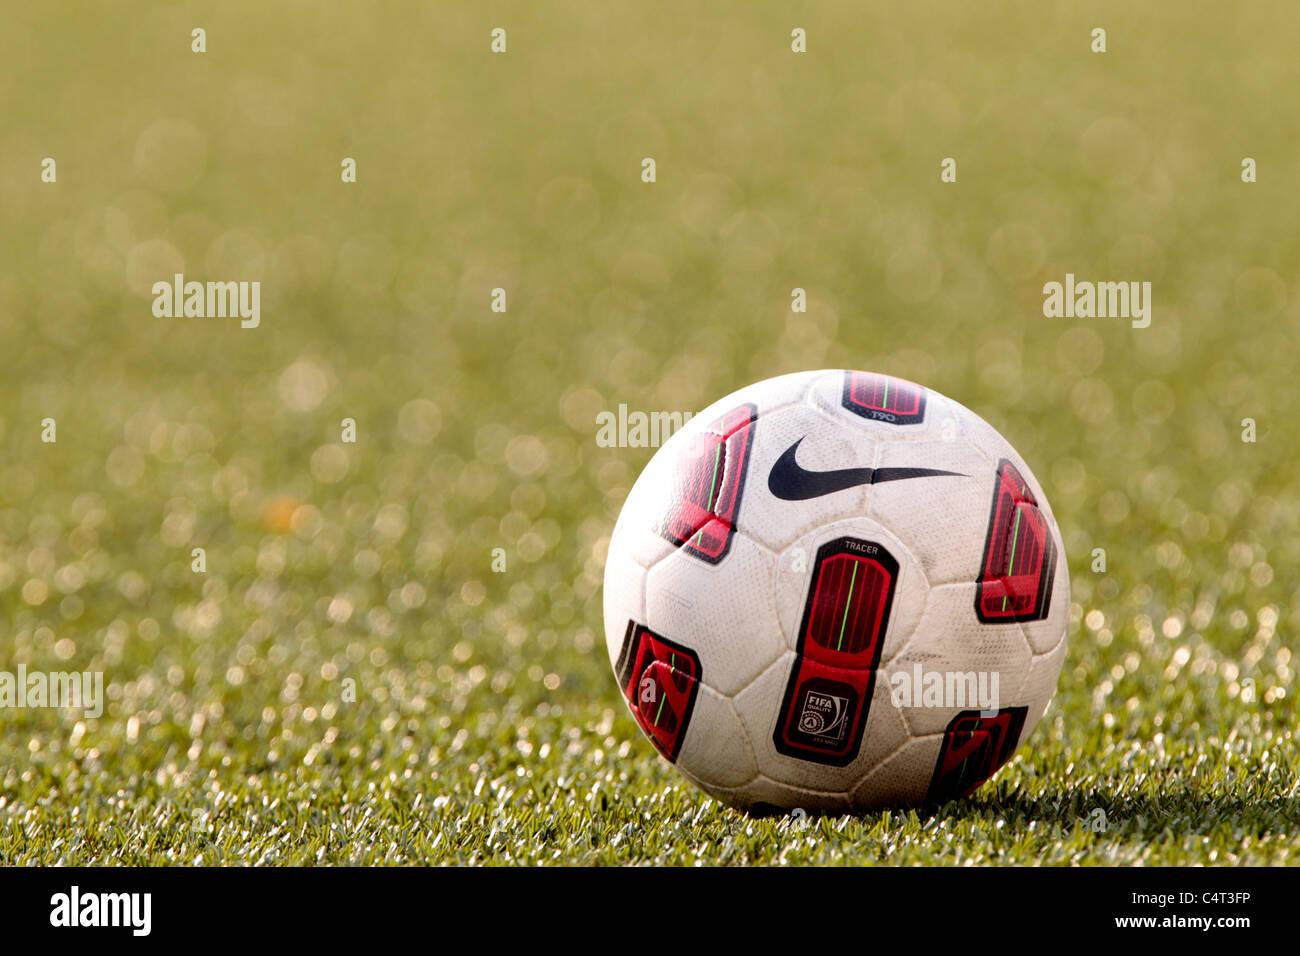 22.06.2011, Nike T90 Catalyst balón de fútbol, pelota oficial de la 23ª  Copa de la ciudad de León de Canon, Jalan Besar Stadium, Singapur  Fotografía de stock - Alamy